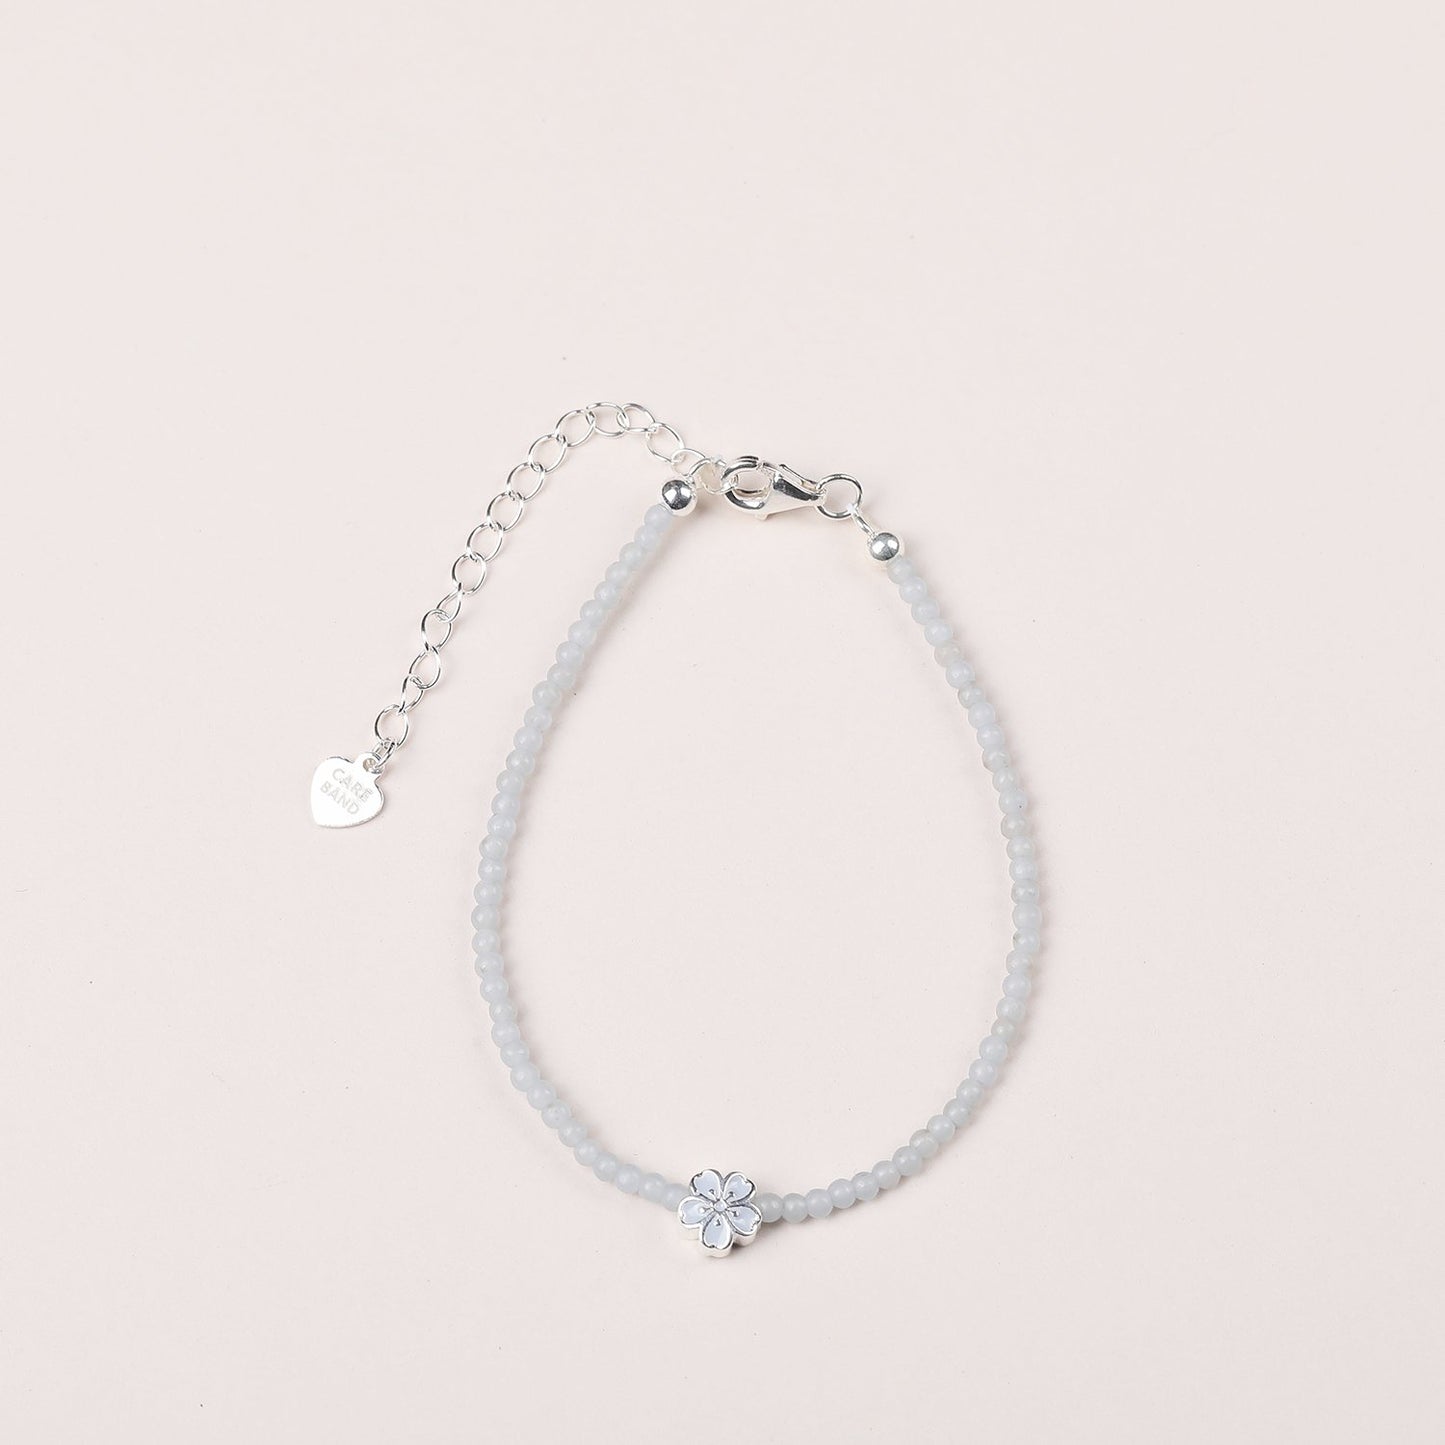 Soft Spring Care Band Angelite Bracelet